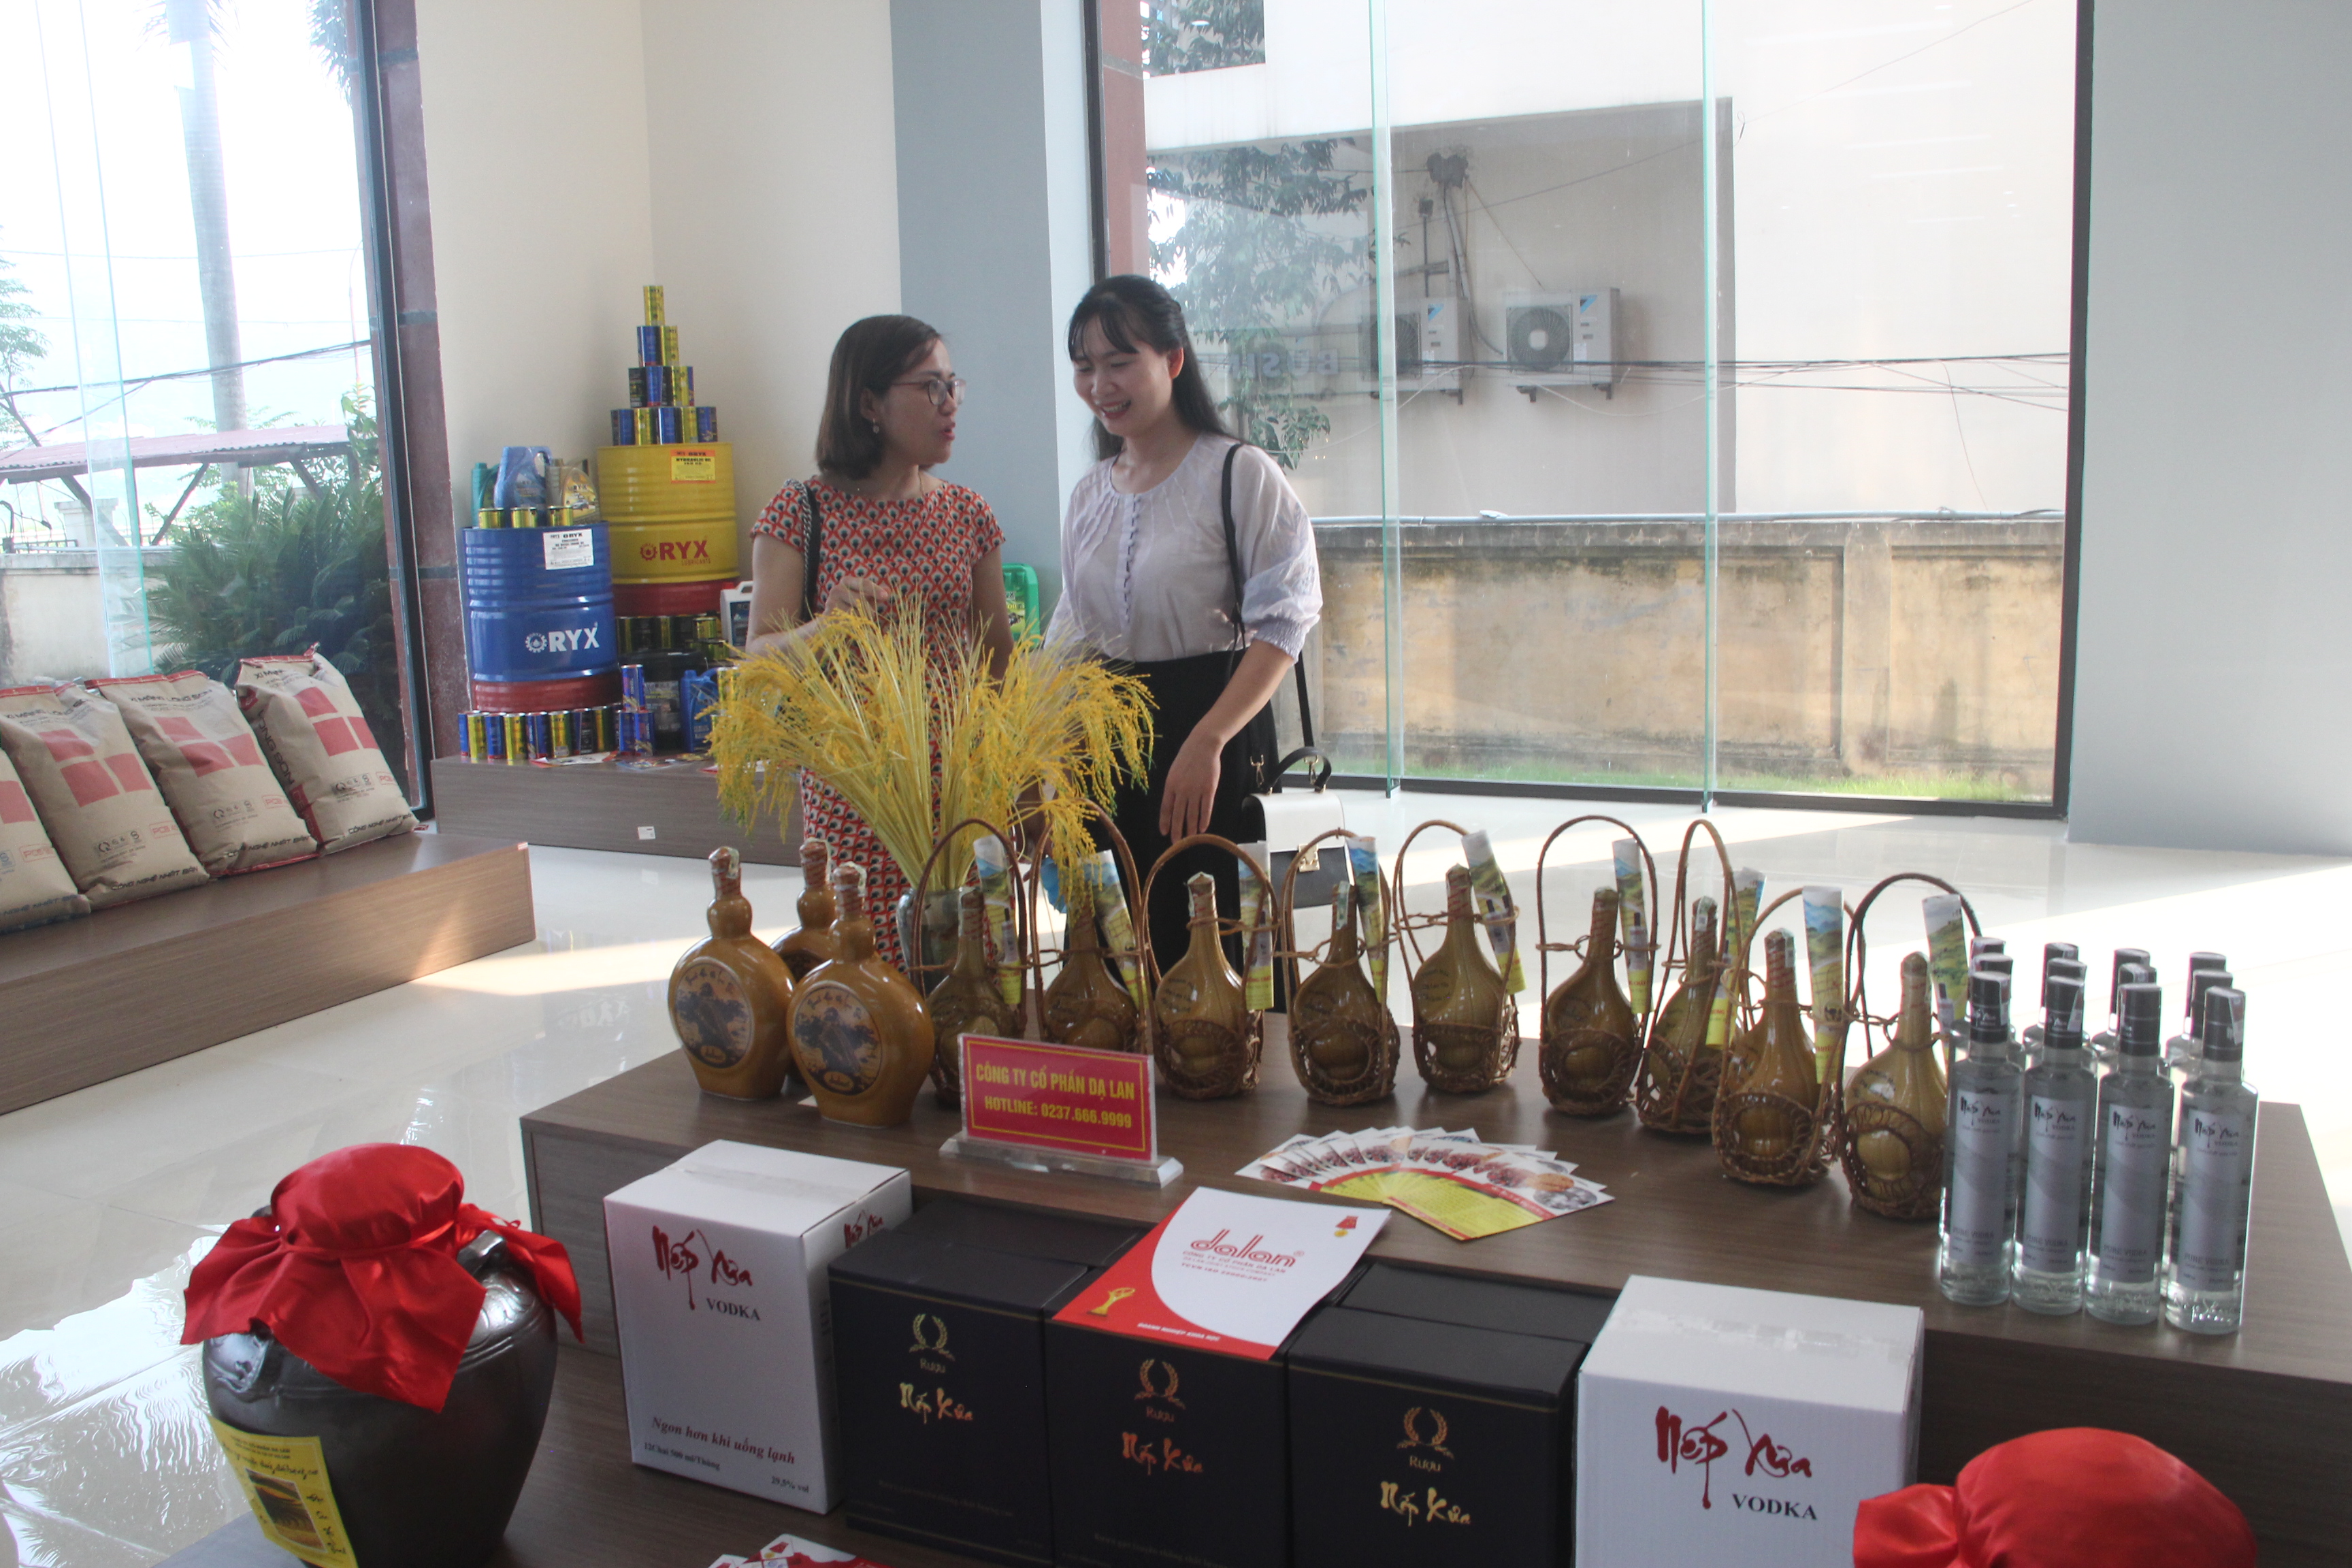 Bố trí lâu dài 4 điểm trưng bày, giới thiệu và bán sản phẩm OCOP tỉnh Thanh Hóa